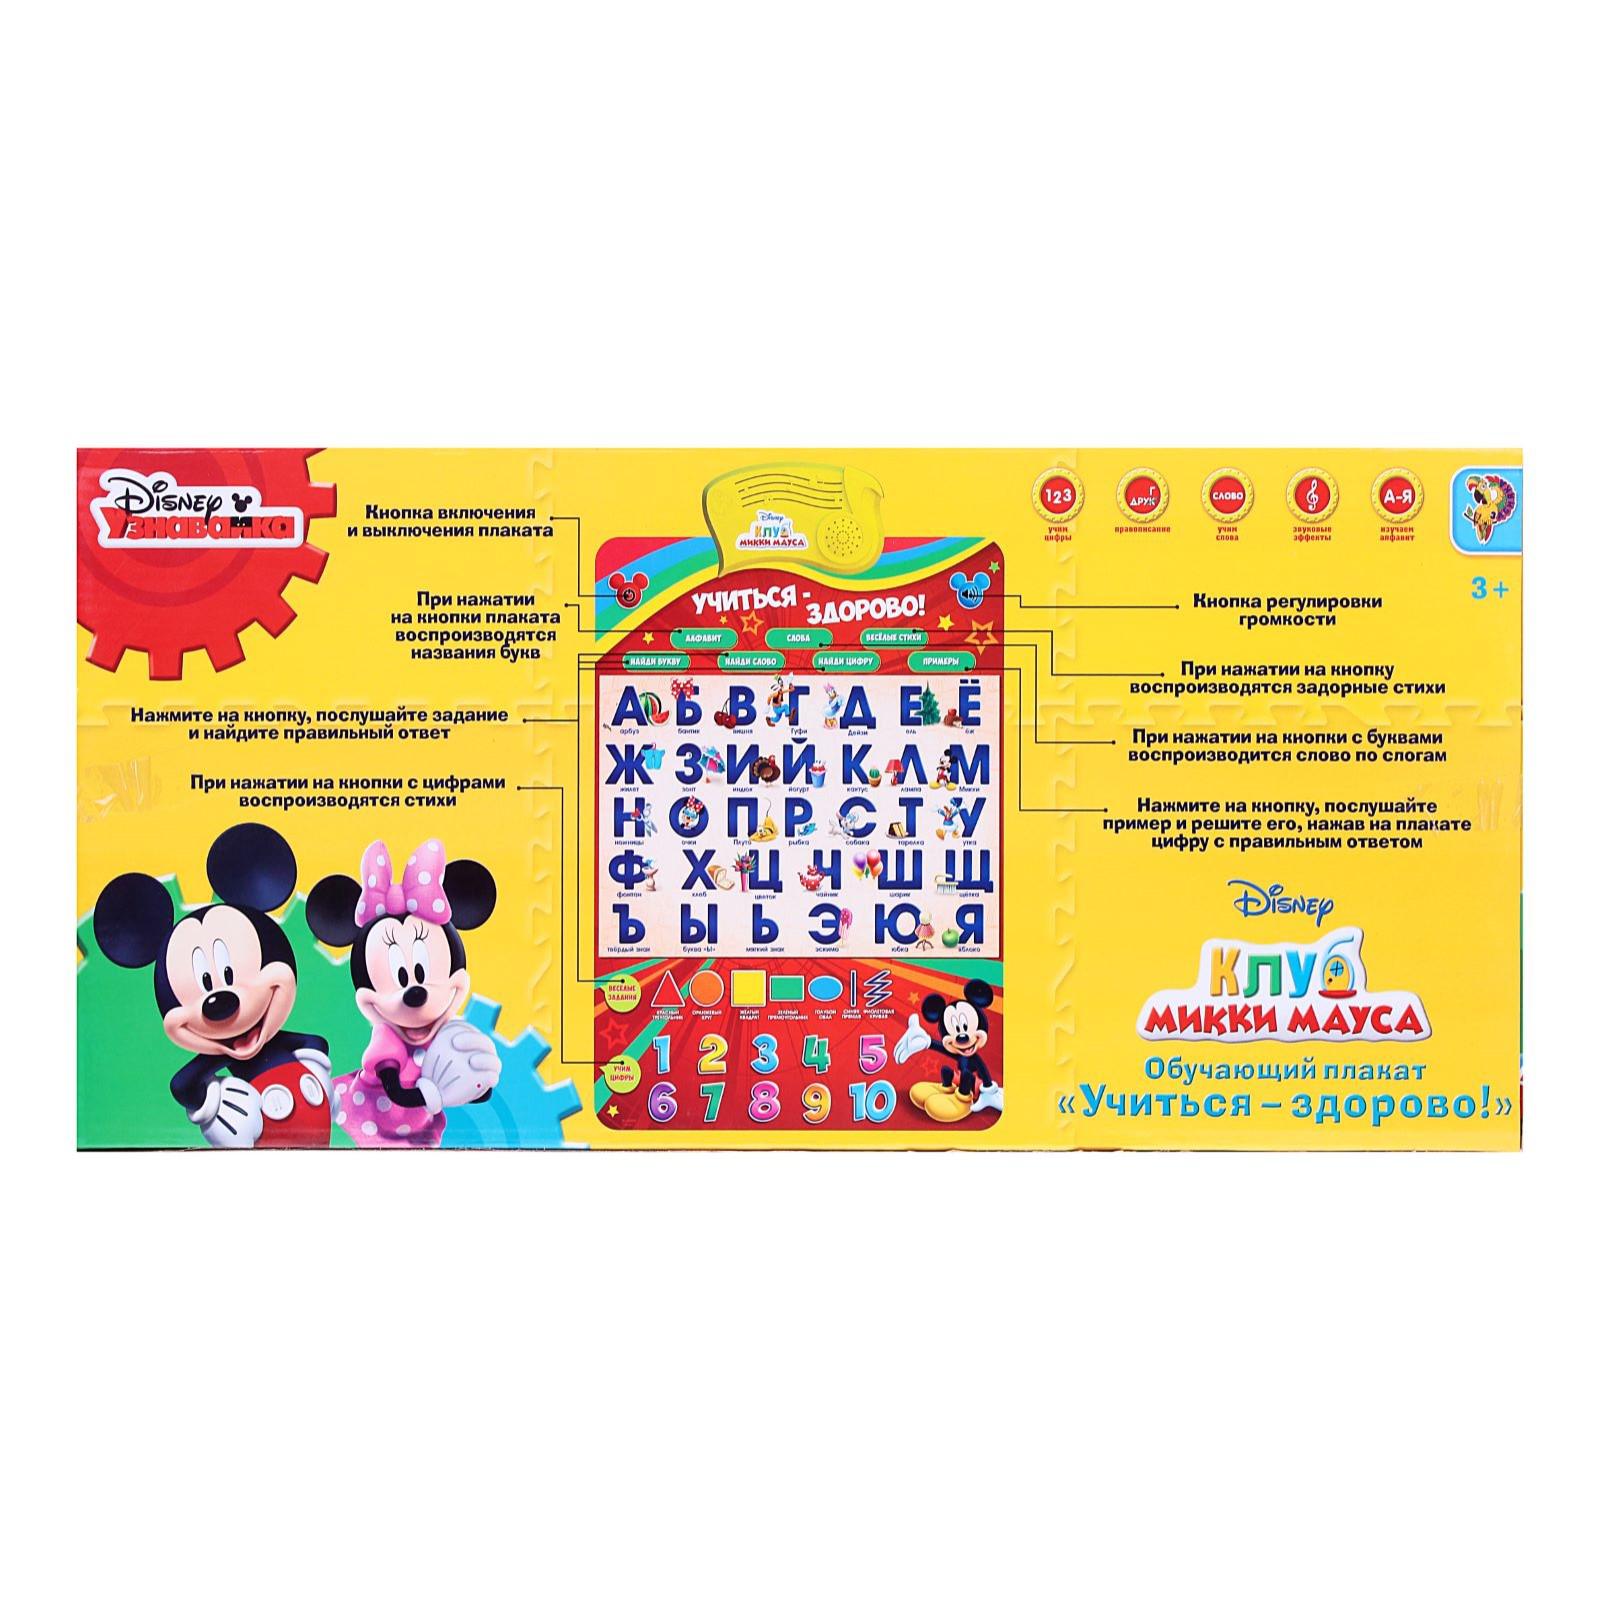 Плакат Disney электронный « Микки Маус и друзья: Учиться-здорово!». русская озвучка - фото 6